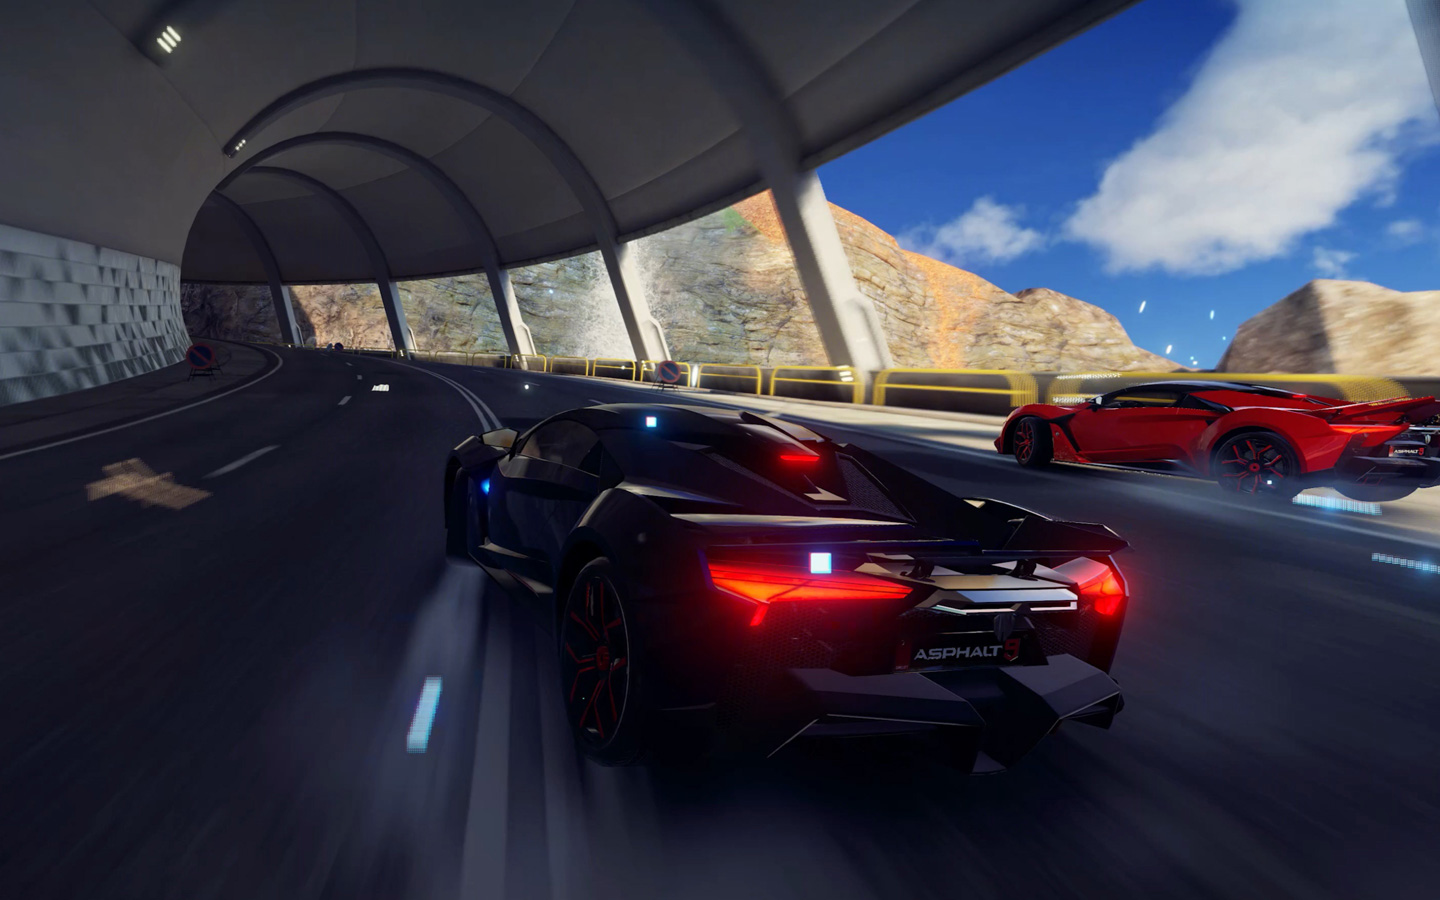 Βίντεο ενός παιχνιδιού με έντονα γραφικά, στο οποίο αυτοκίνητα αγωνίζονται μέσα σε ένα τούνελ.